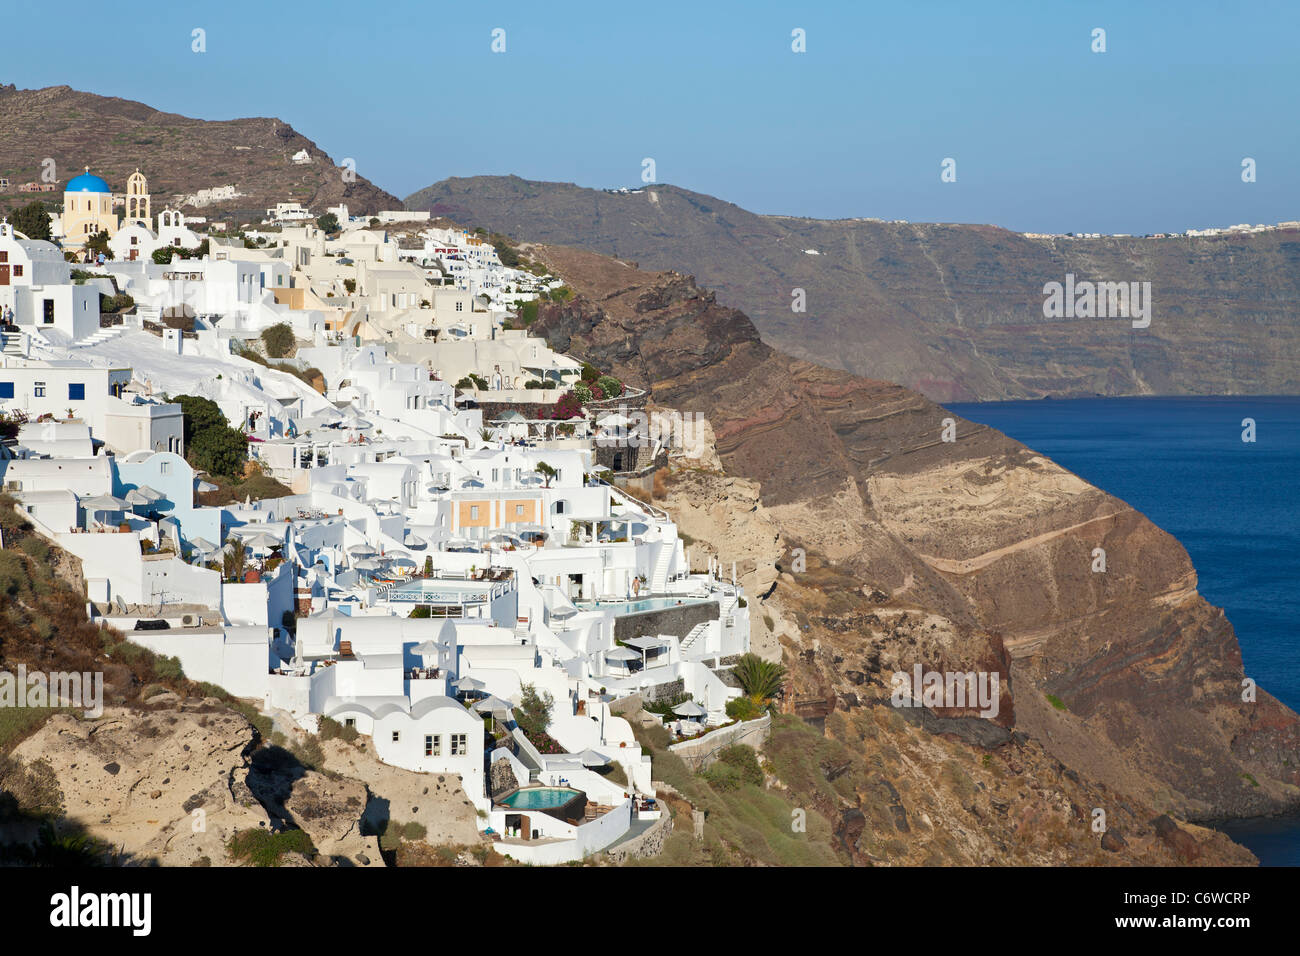 Villaggio di Oia (la), Santorini (Thira), Isole Cicladi, il Mare Egeo, in Grecia, in Europa Foto Stock